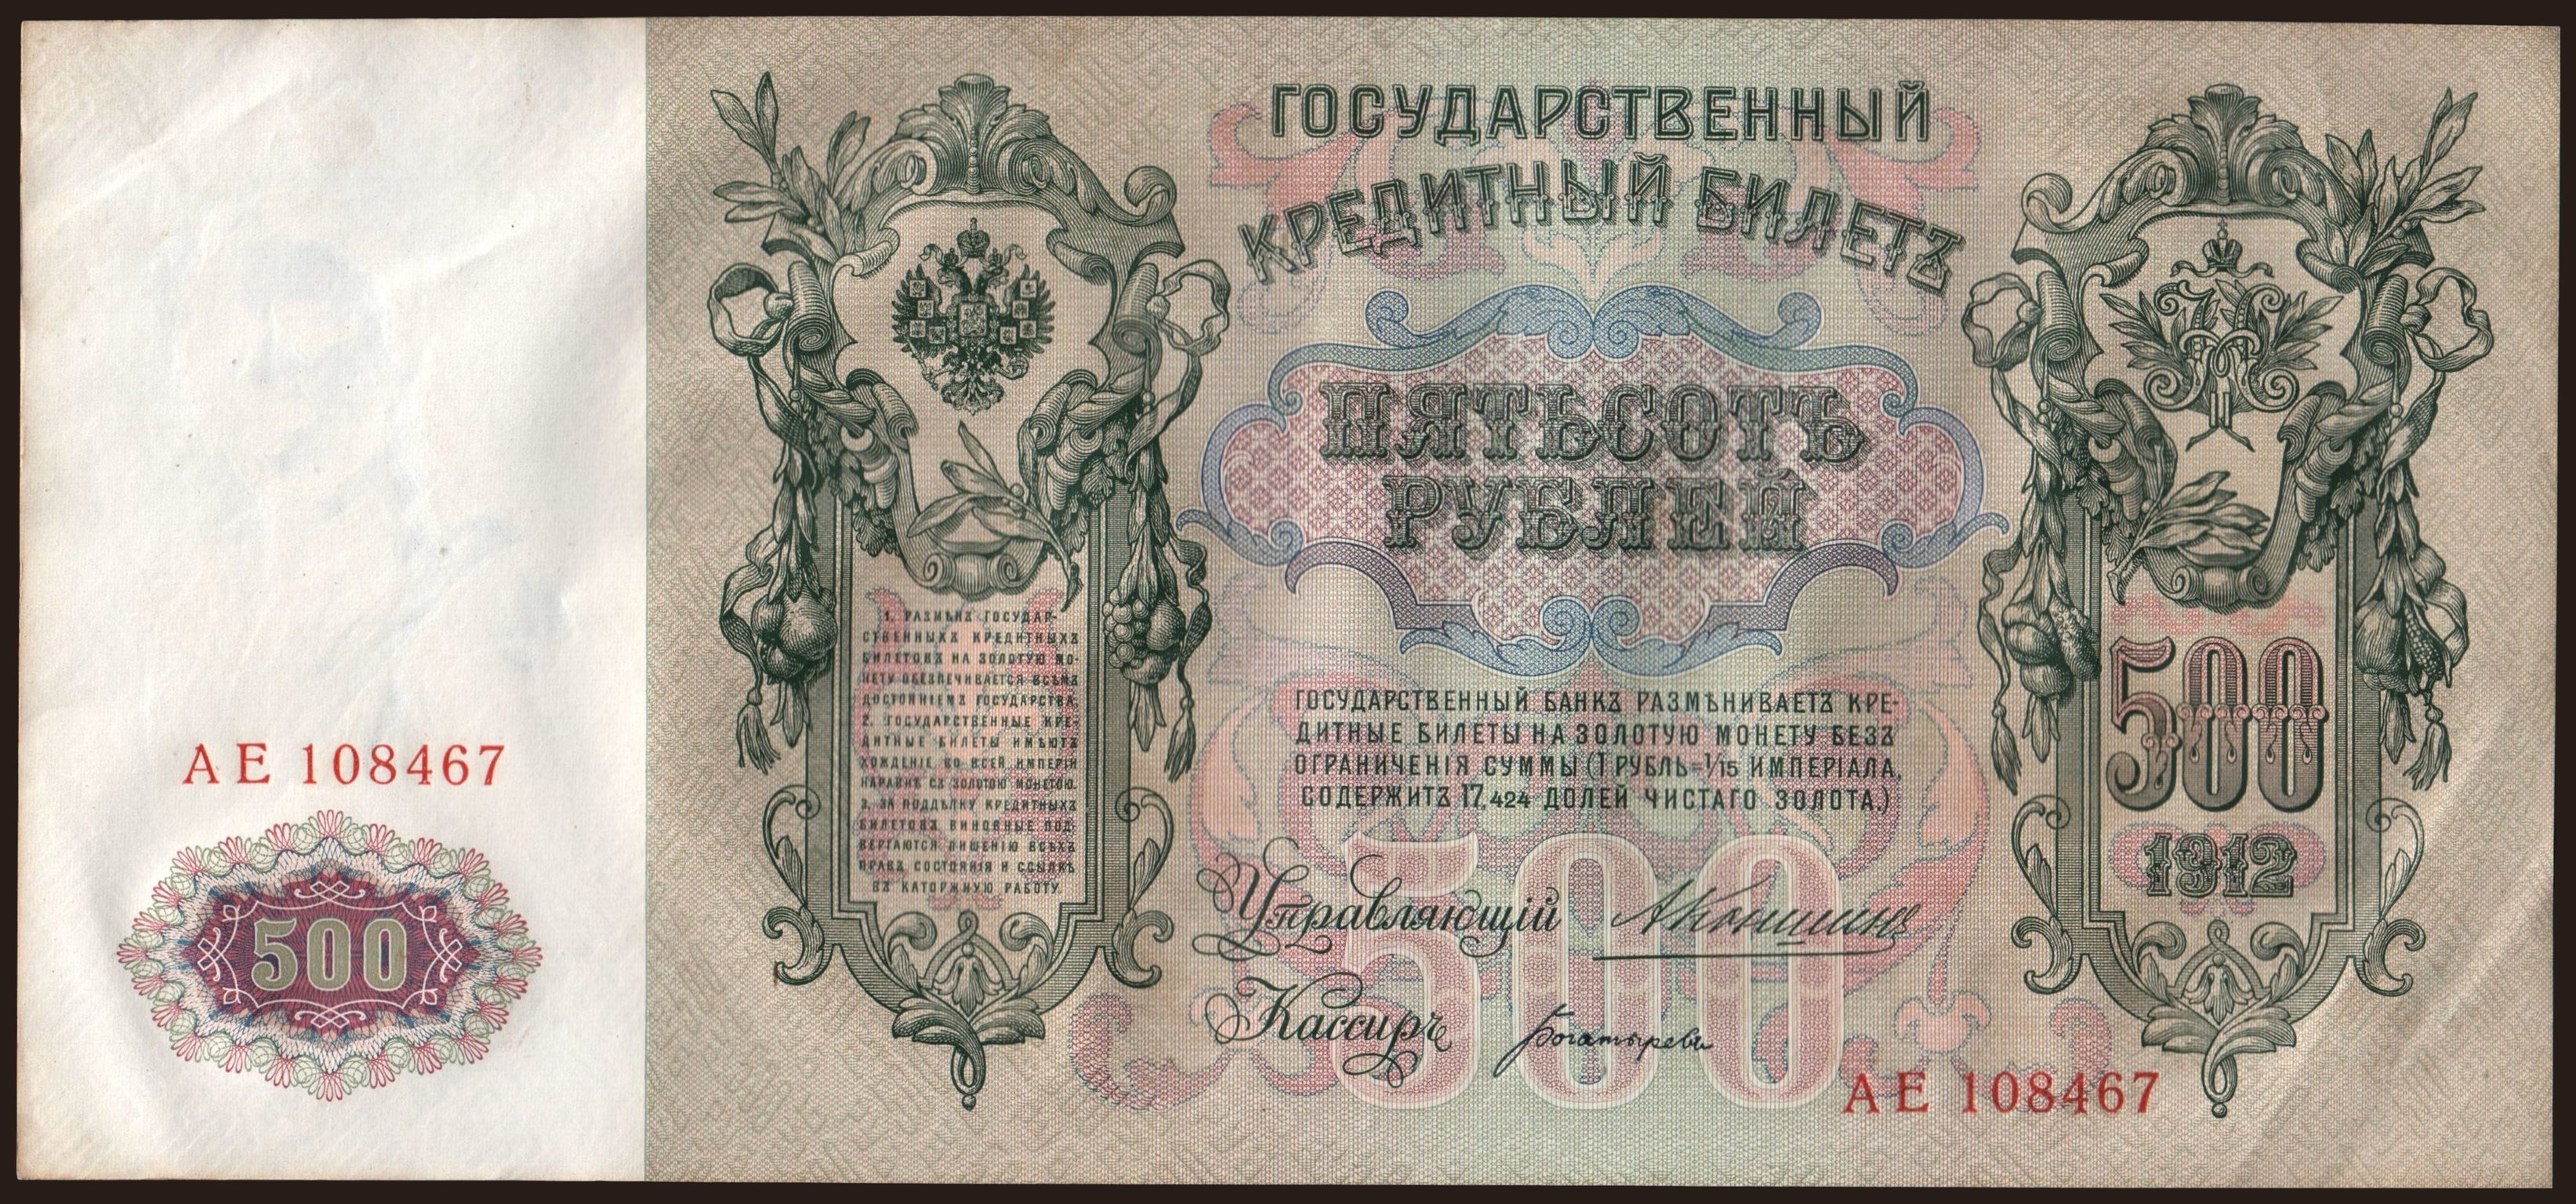 500 rubel, 1912, Konshin/ Bogatyrjow